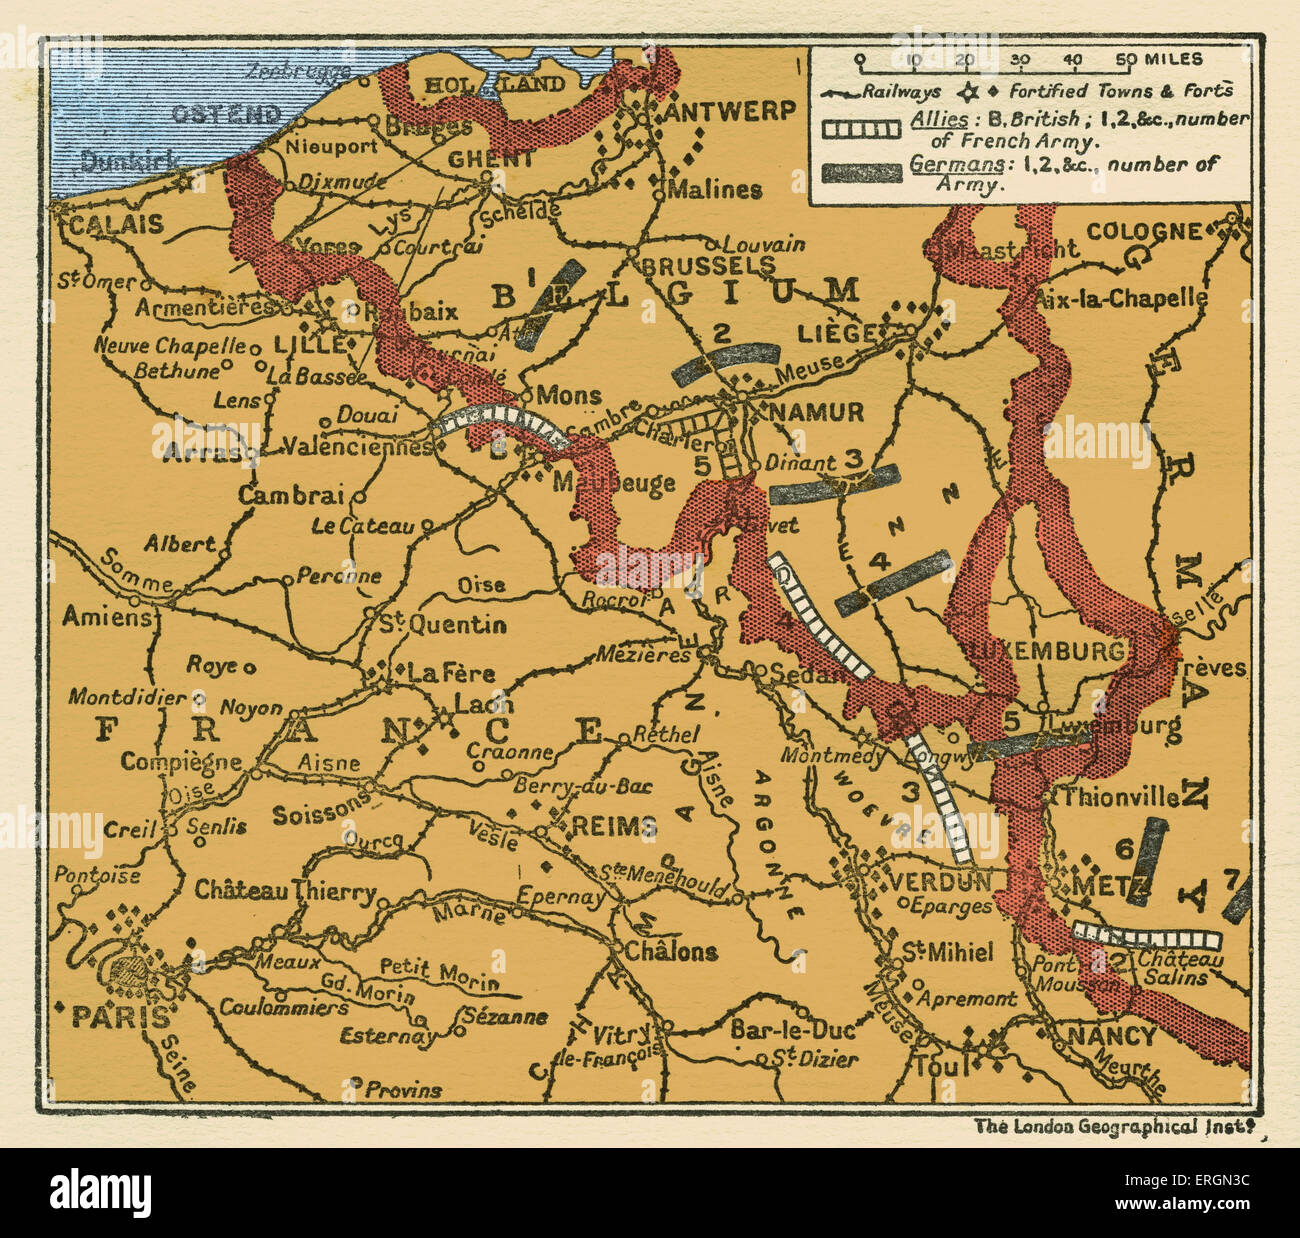 WWI - Karte von der Position der Armeen 22. August 1914 in Belgien und Frankreich Shwoing Bundeswehr Divisionen und Briten und Stockfoto